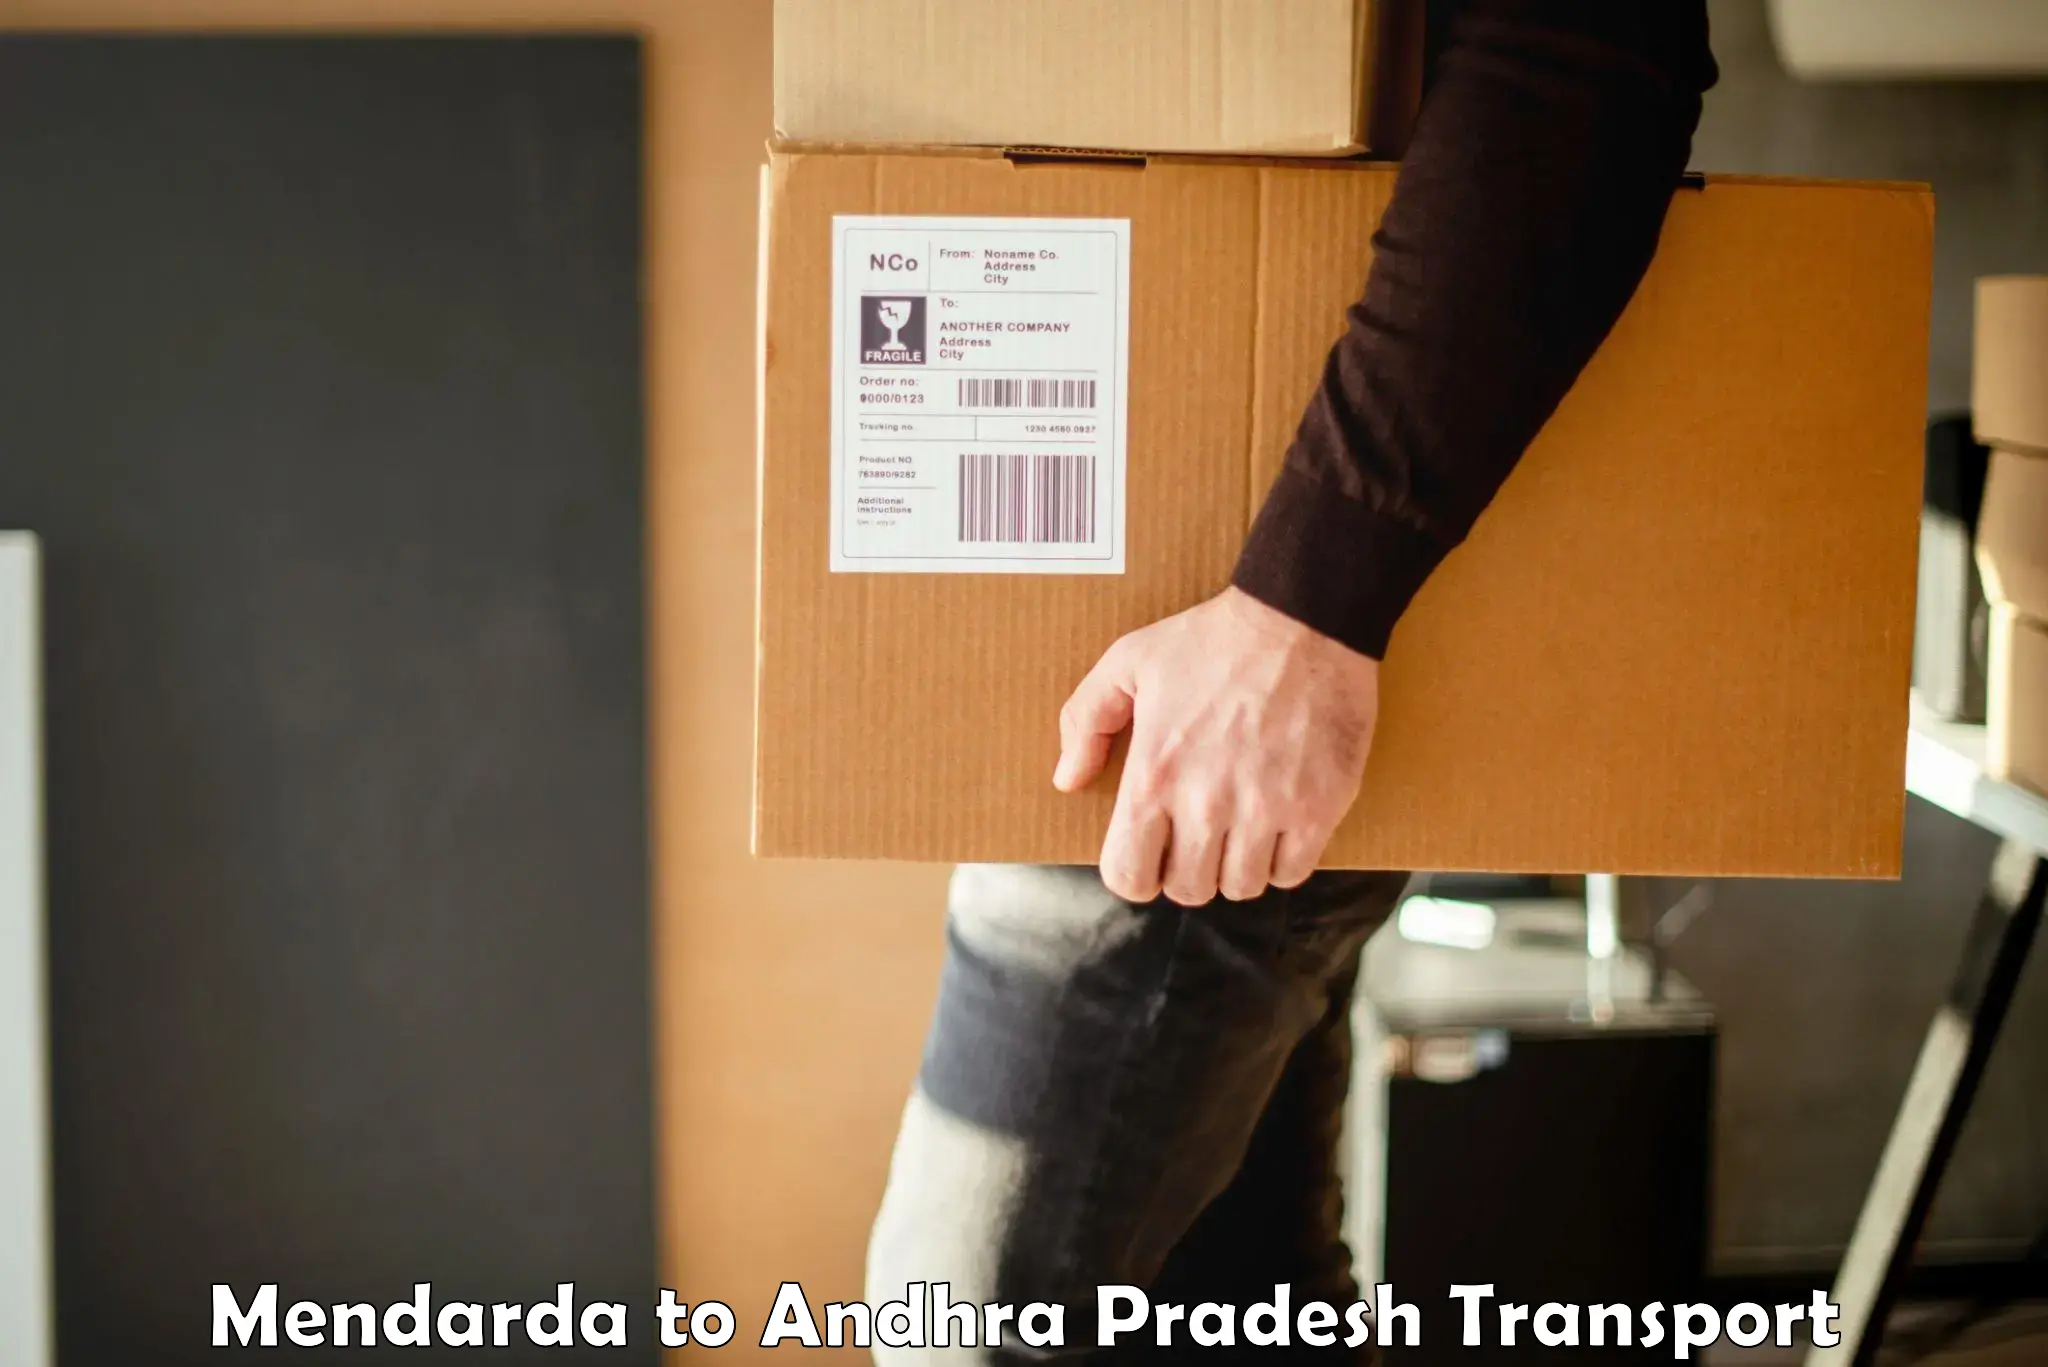 Commercial transport service Mendarda to Amadalavalasa